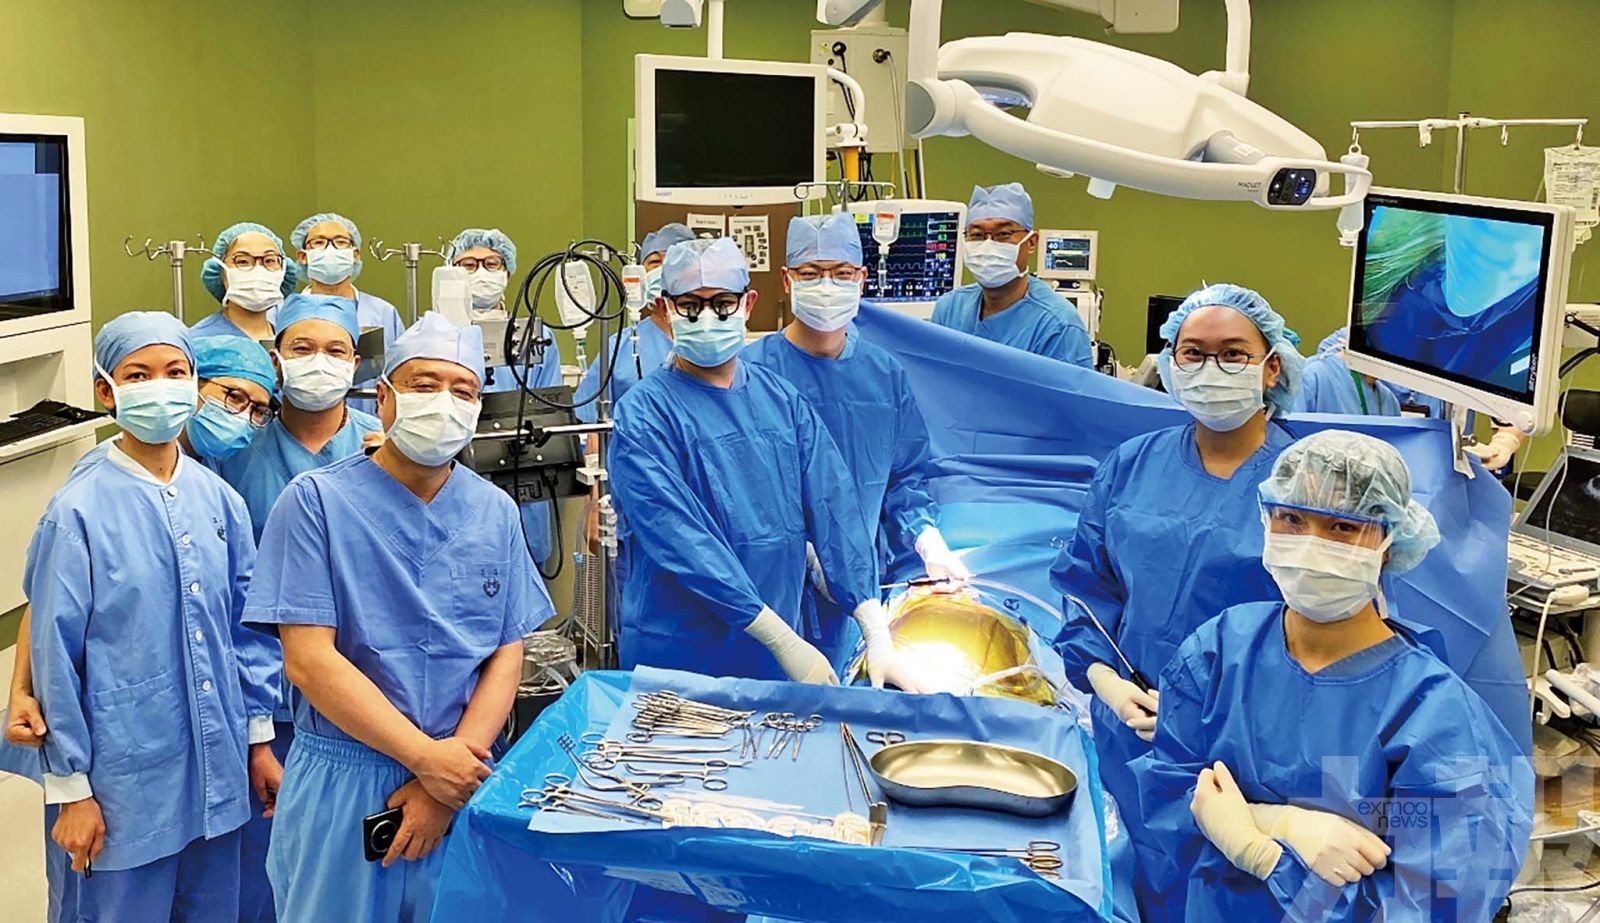 山頂醫院成功開展心臟外科手術